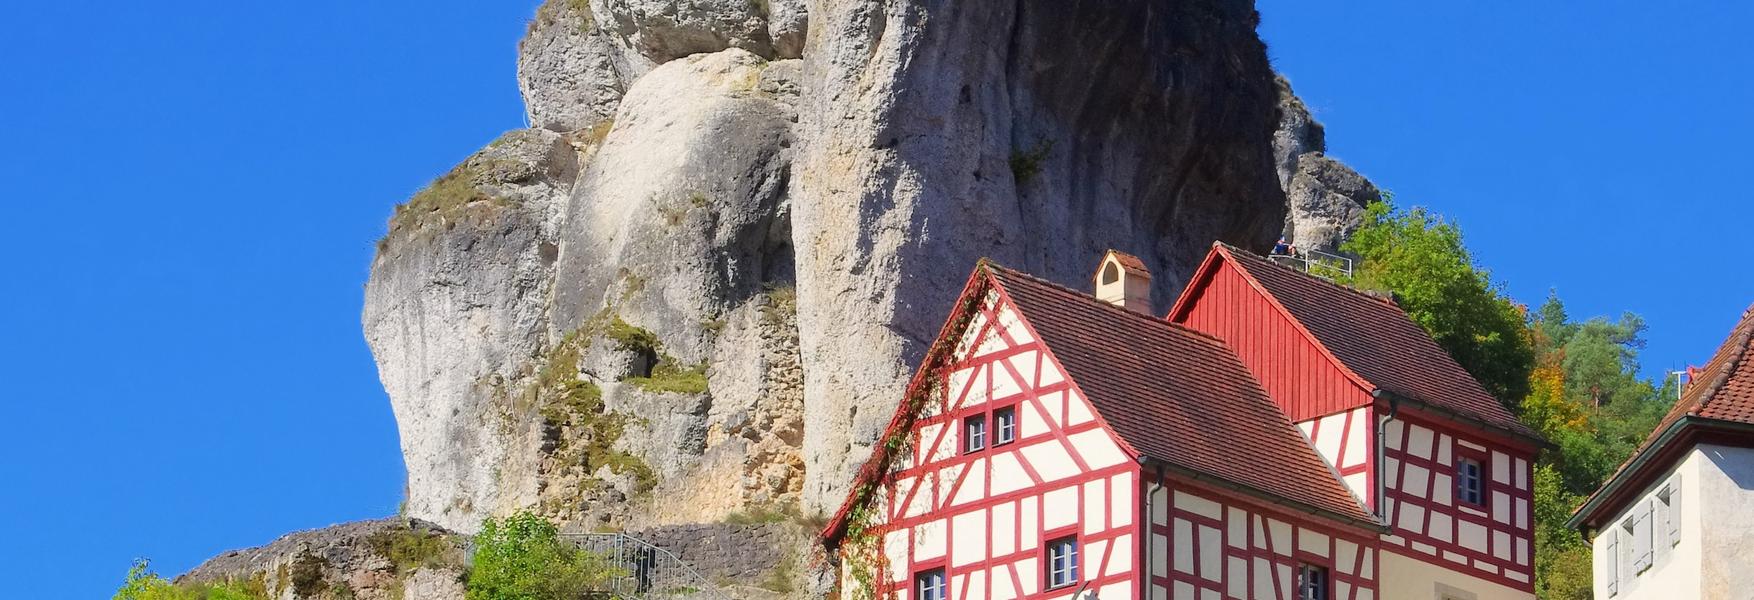 Ferienwohnungen und Ferienhäuser in der Fränkischen Schweiz - HomeToGo